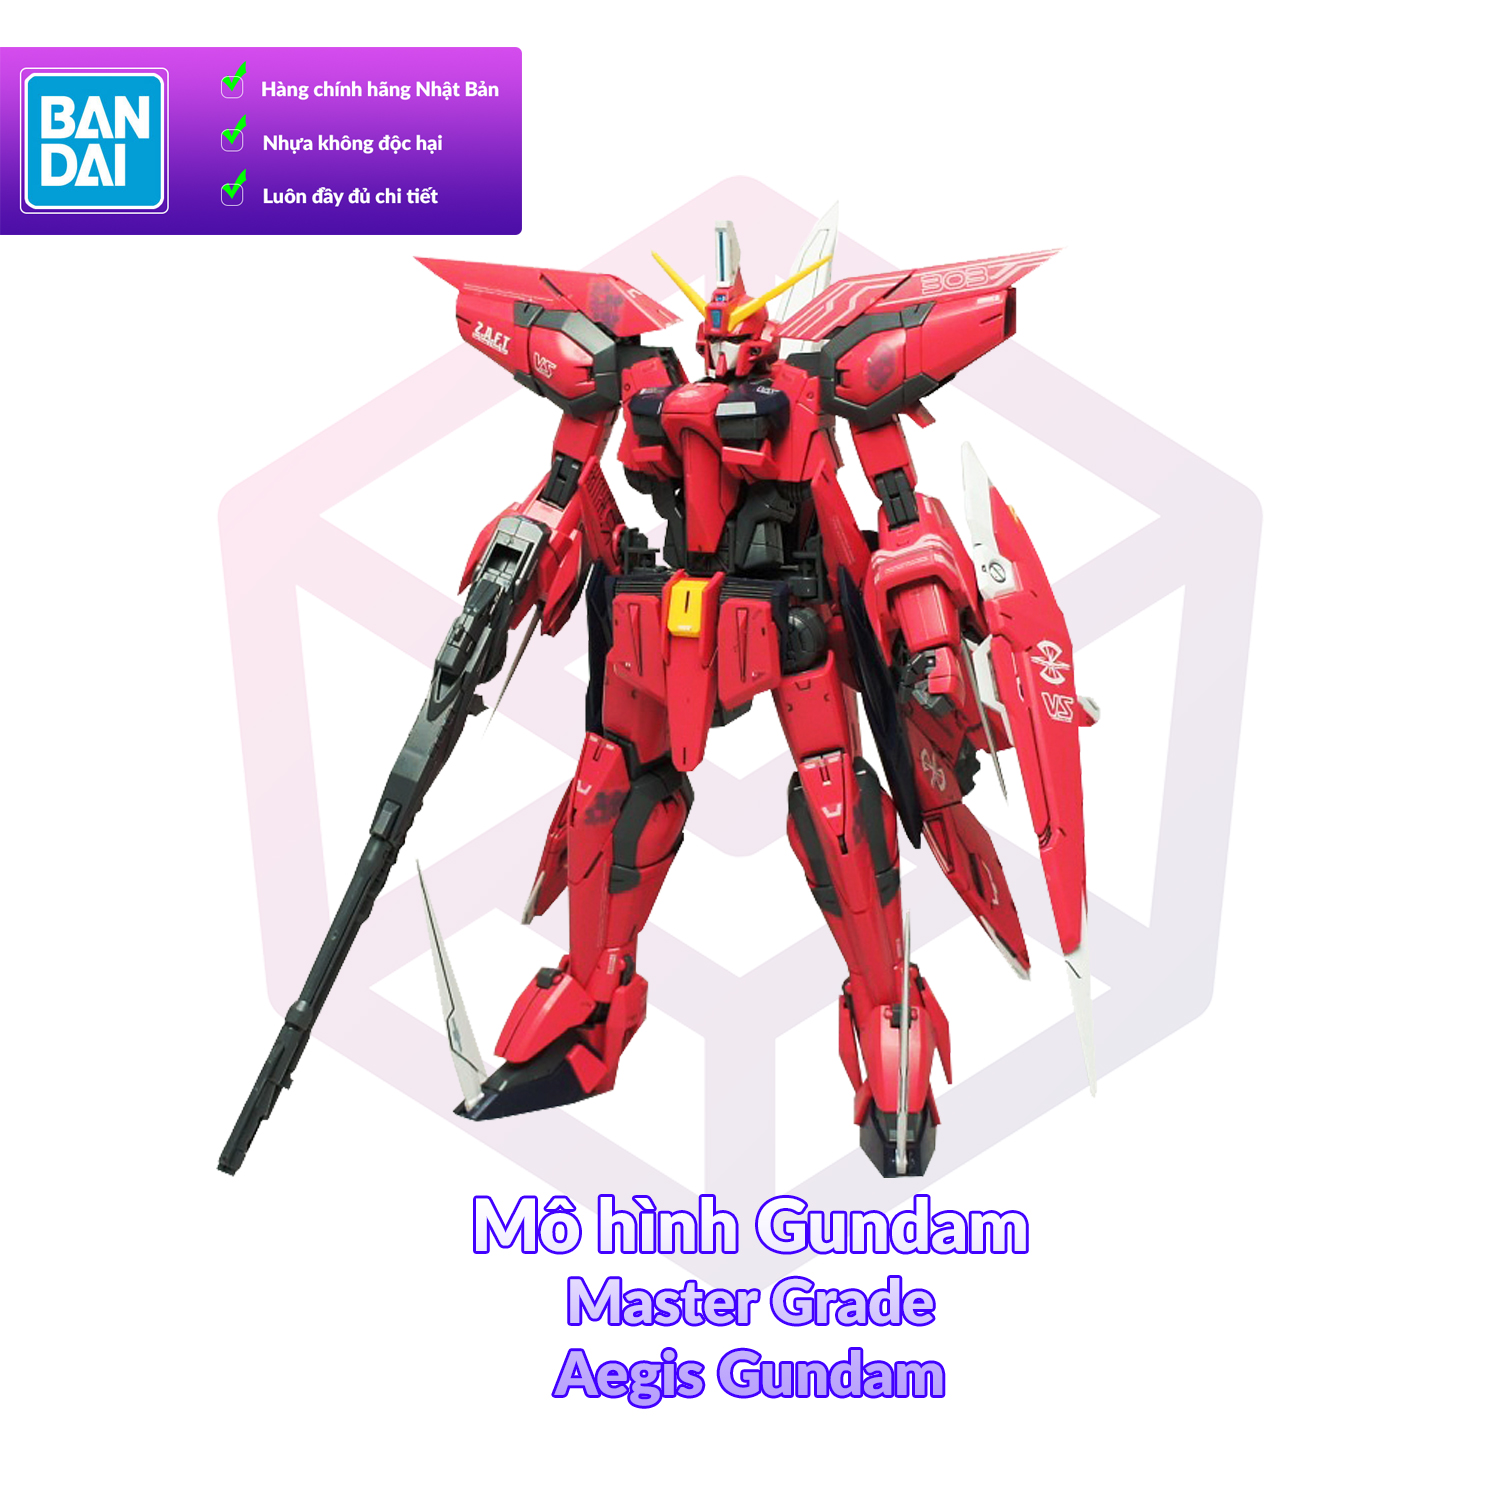 7-11 12 VOUCHER 8%Mô Hình Gundam Bandai MG Aegis Gundam 1 100 SEED GDB BMG